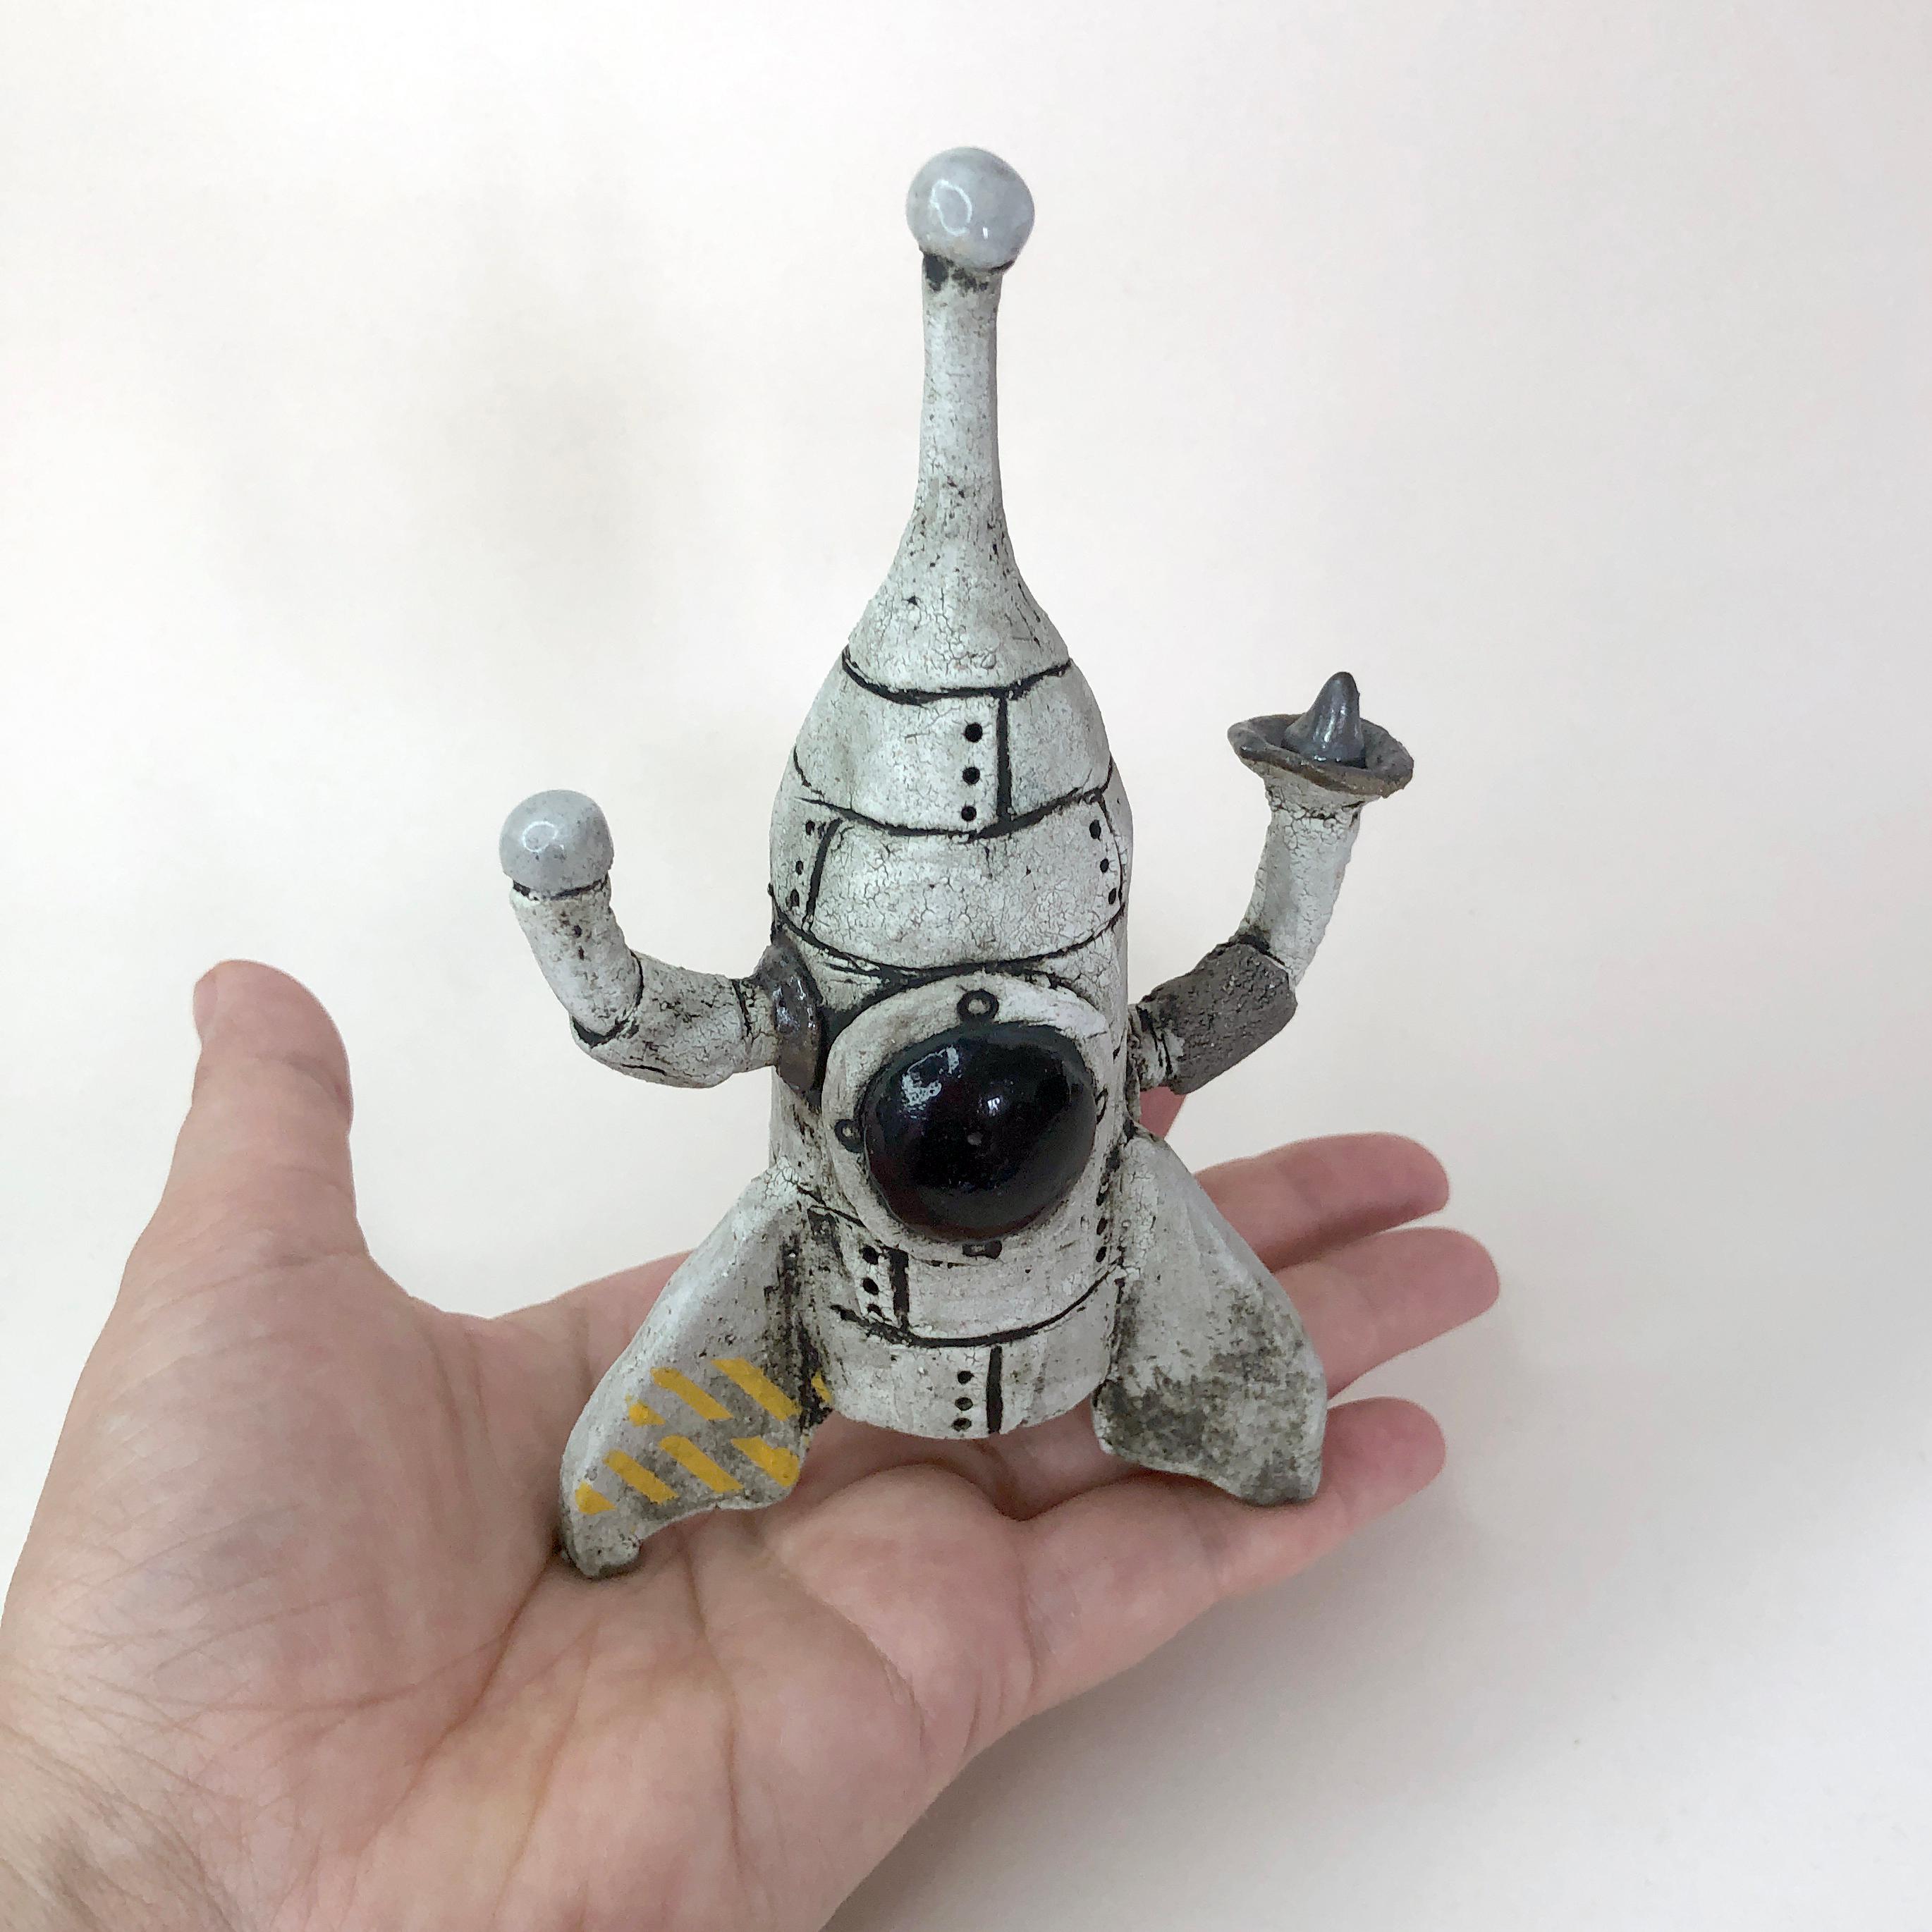 Renate Frotscher Figurative Sculpture - The space rocket number 10